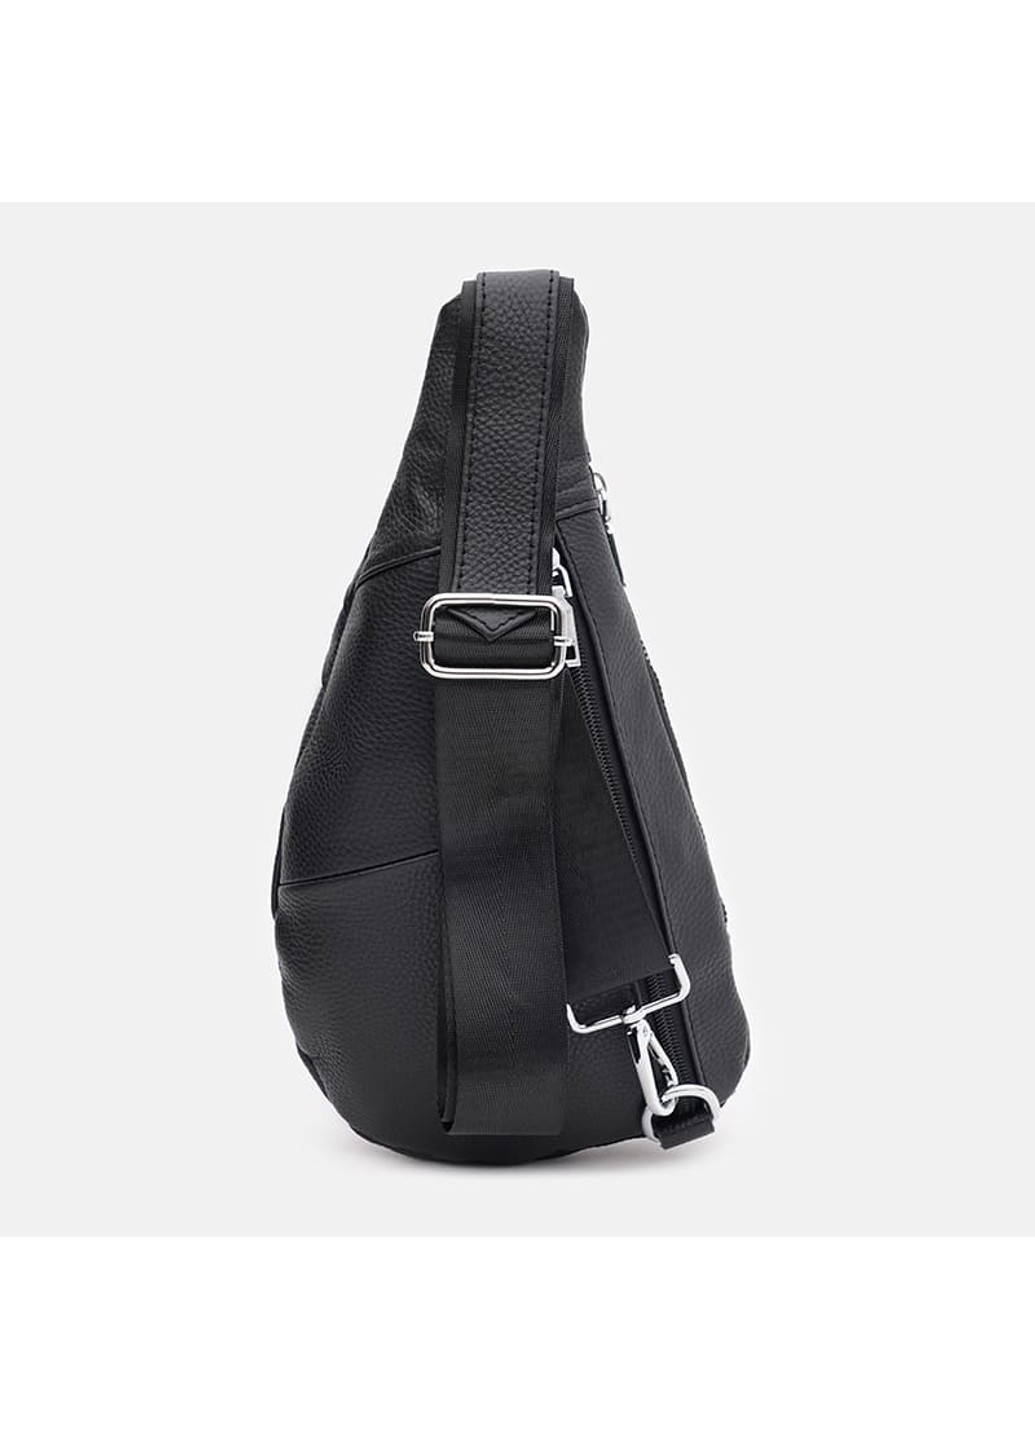 Мужской кожаный рюкзак через плечо k1712bl-black Keizer (274535904)